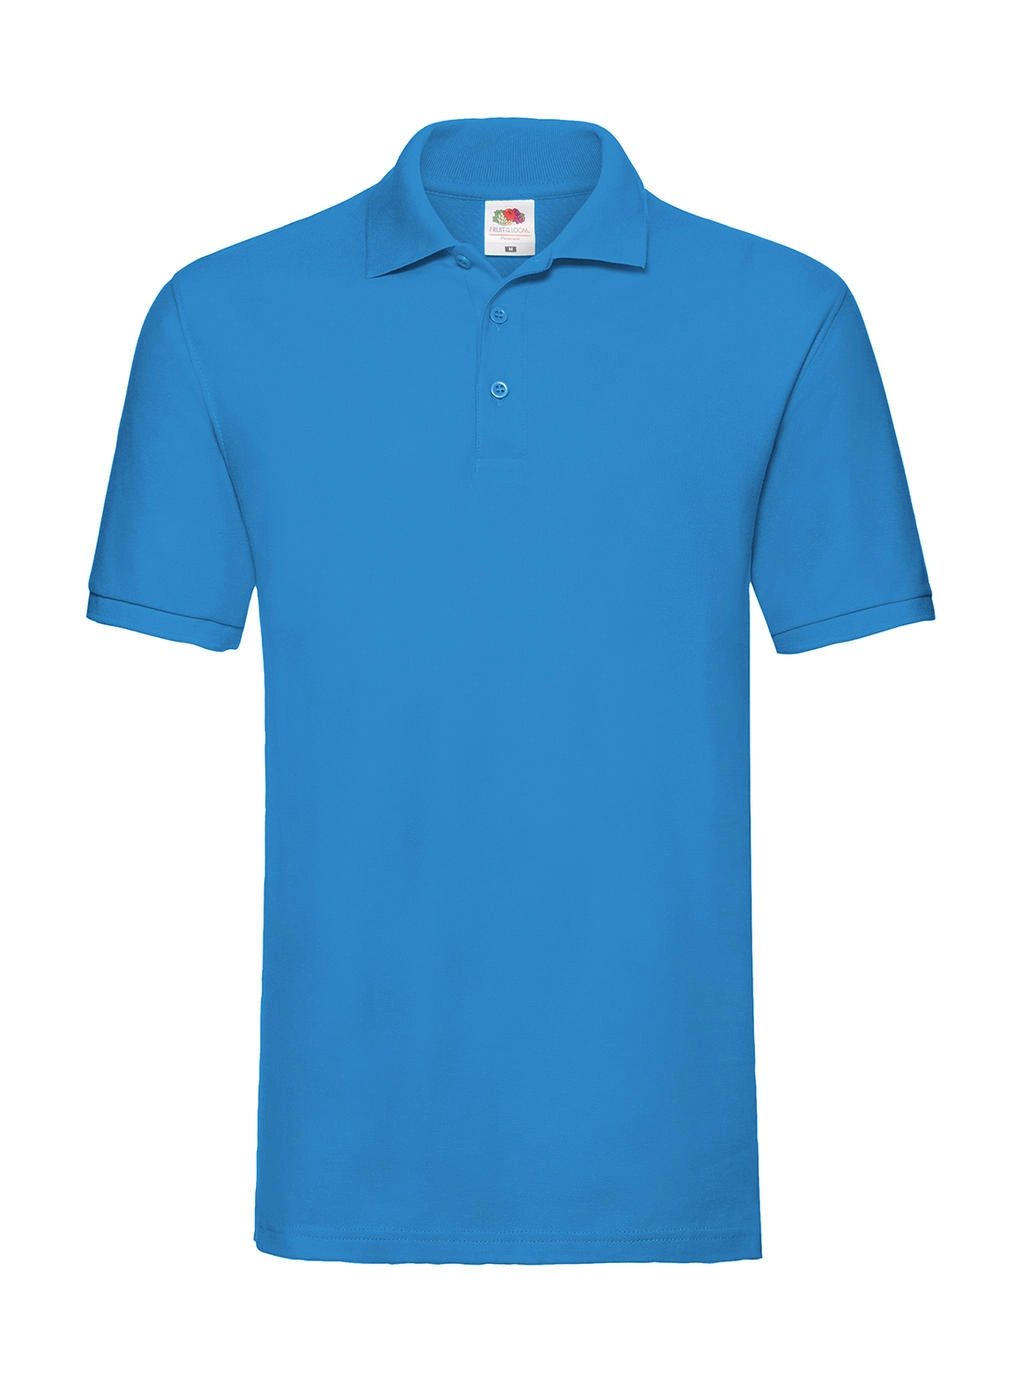 Premium Polo zum Besticken und Bedrucken in der Farbe Azure Blue mit Ihren Logo, Schriftzug oder Motiv.